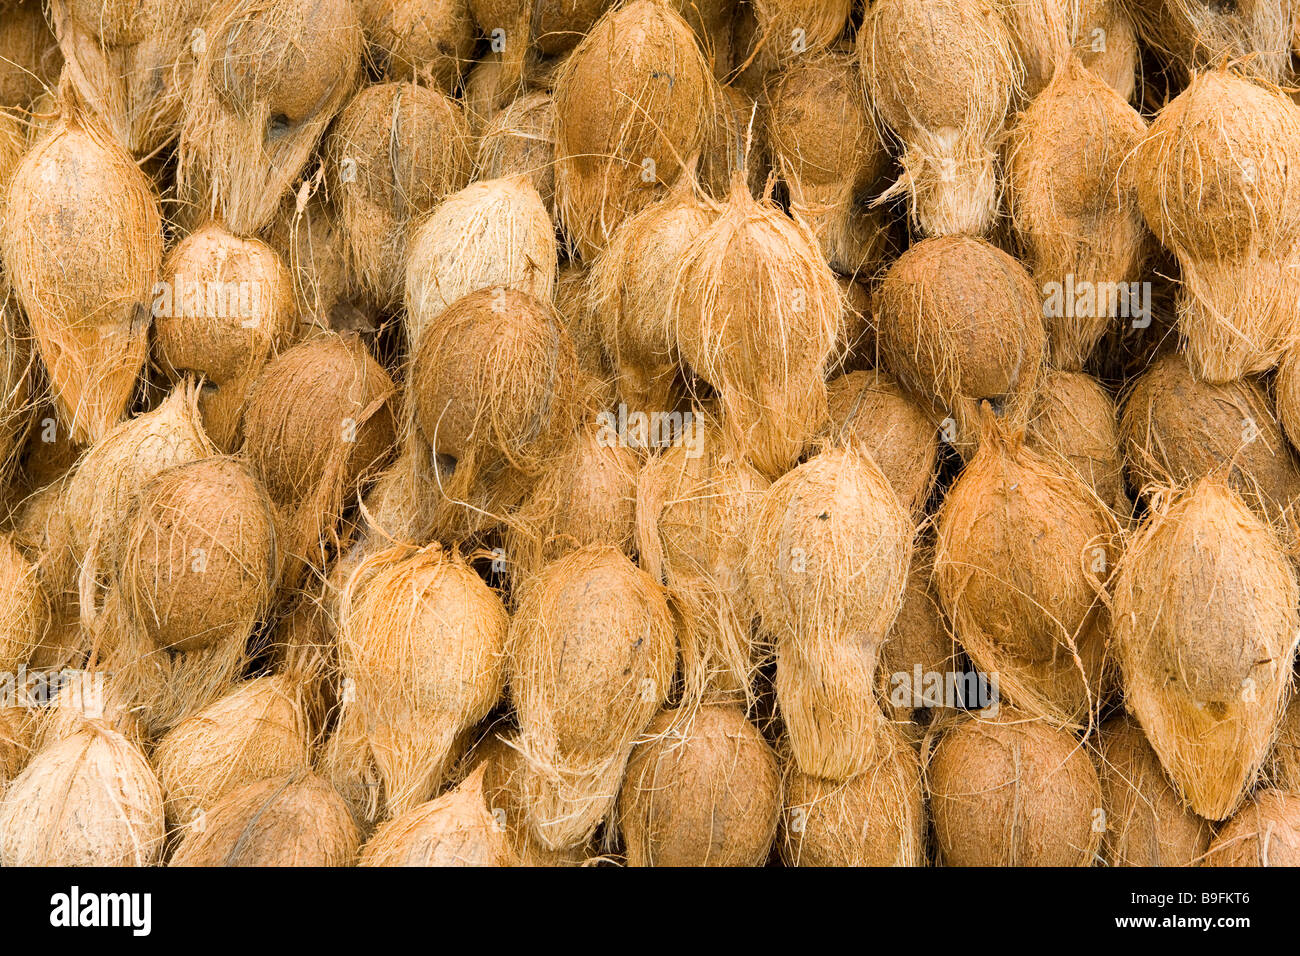 India Bengaluru Bangalore City Market Noci di cocco Foto Stock